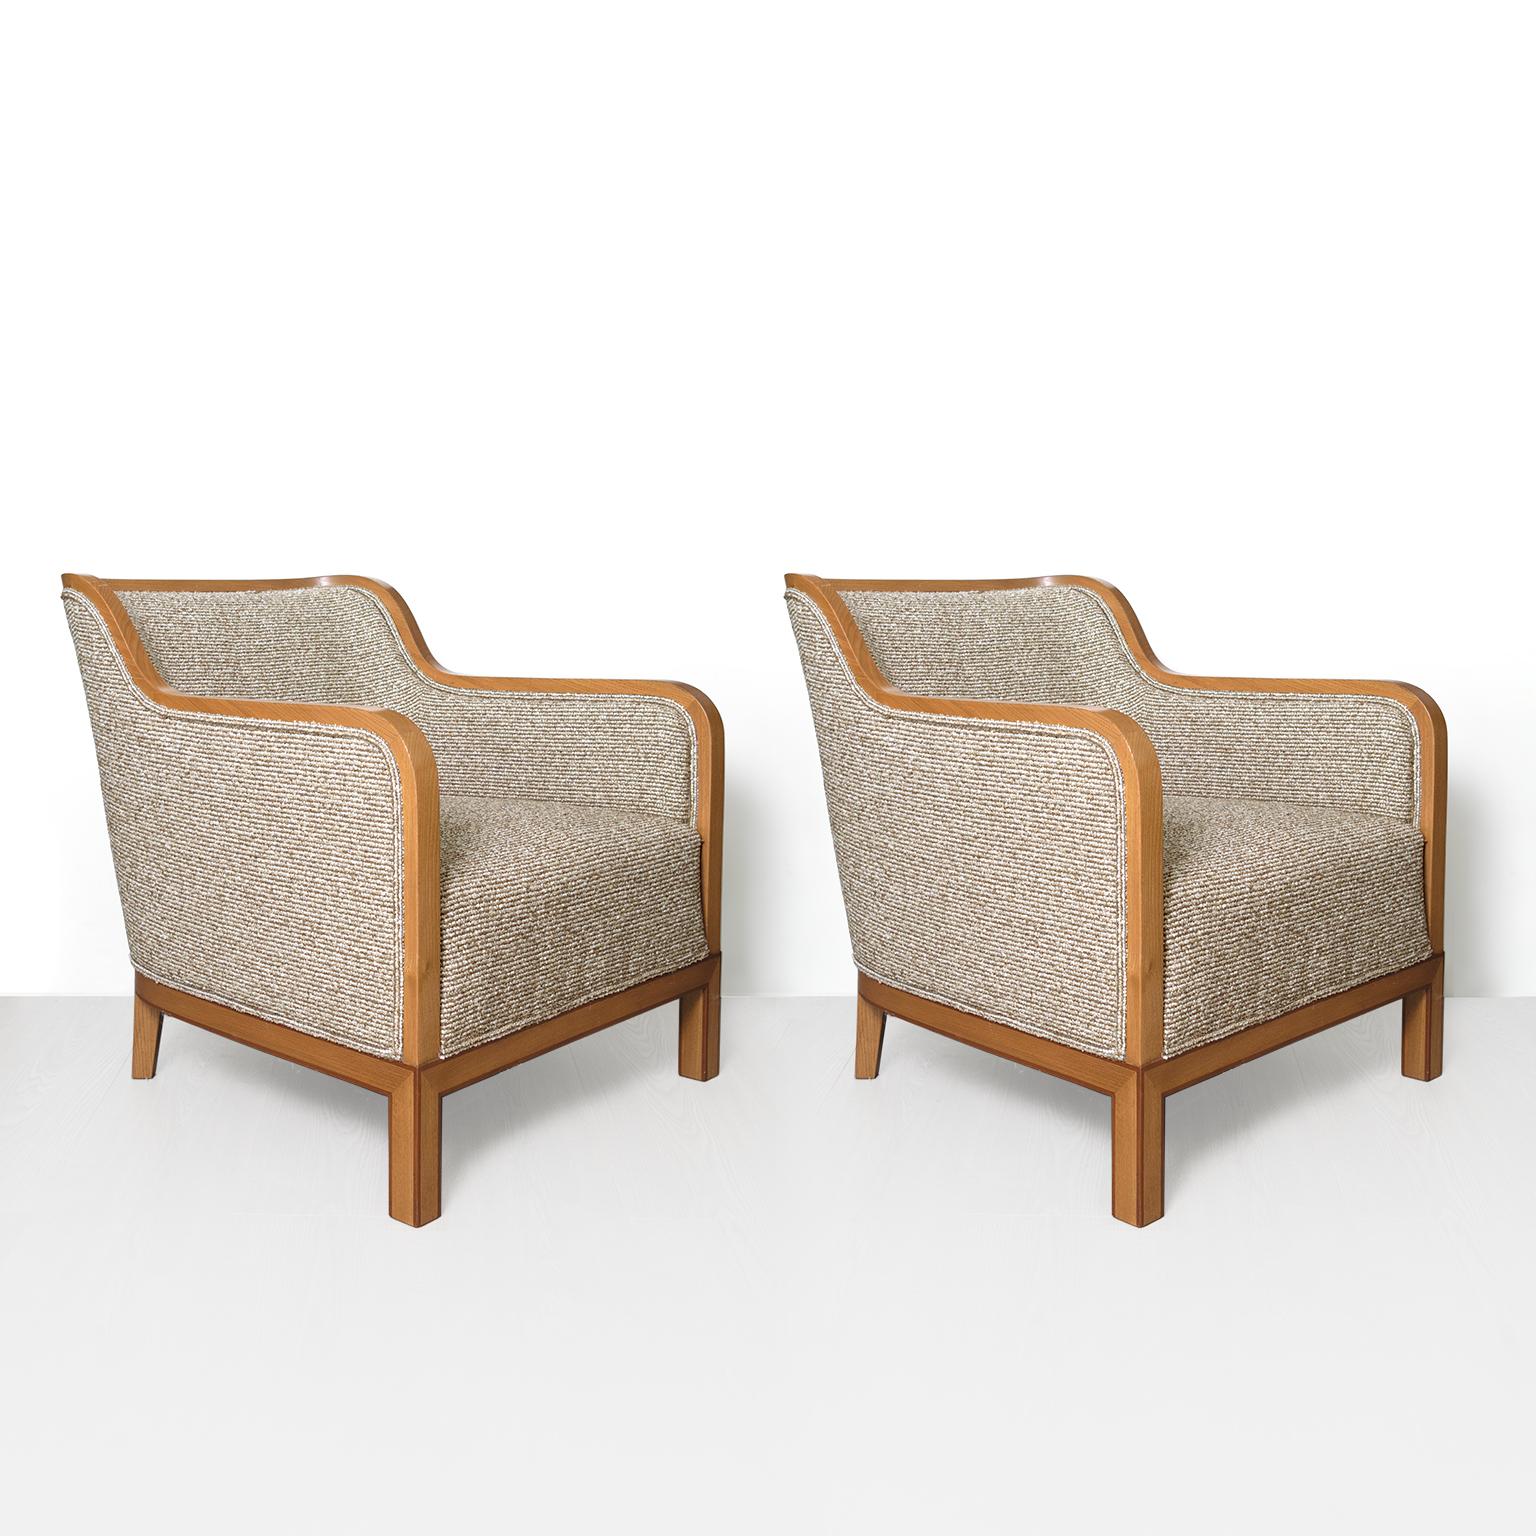 Ein feines Paar schwedischer Art-Deco-Sessel aus Ulmenholz mit Mahagoni-Furnierstreifen, entworfen von David Blomberg und hergestellt von Nordiska Kompaniet in Stockholm, um 1930. Dieses Paar hat eine sehr schöne Größe und eine perfekt abgestimmte